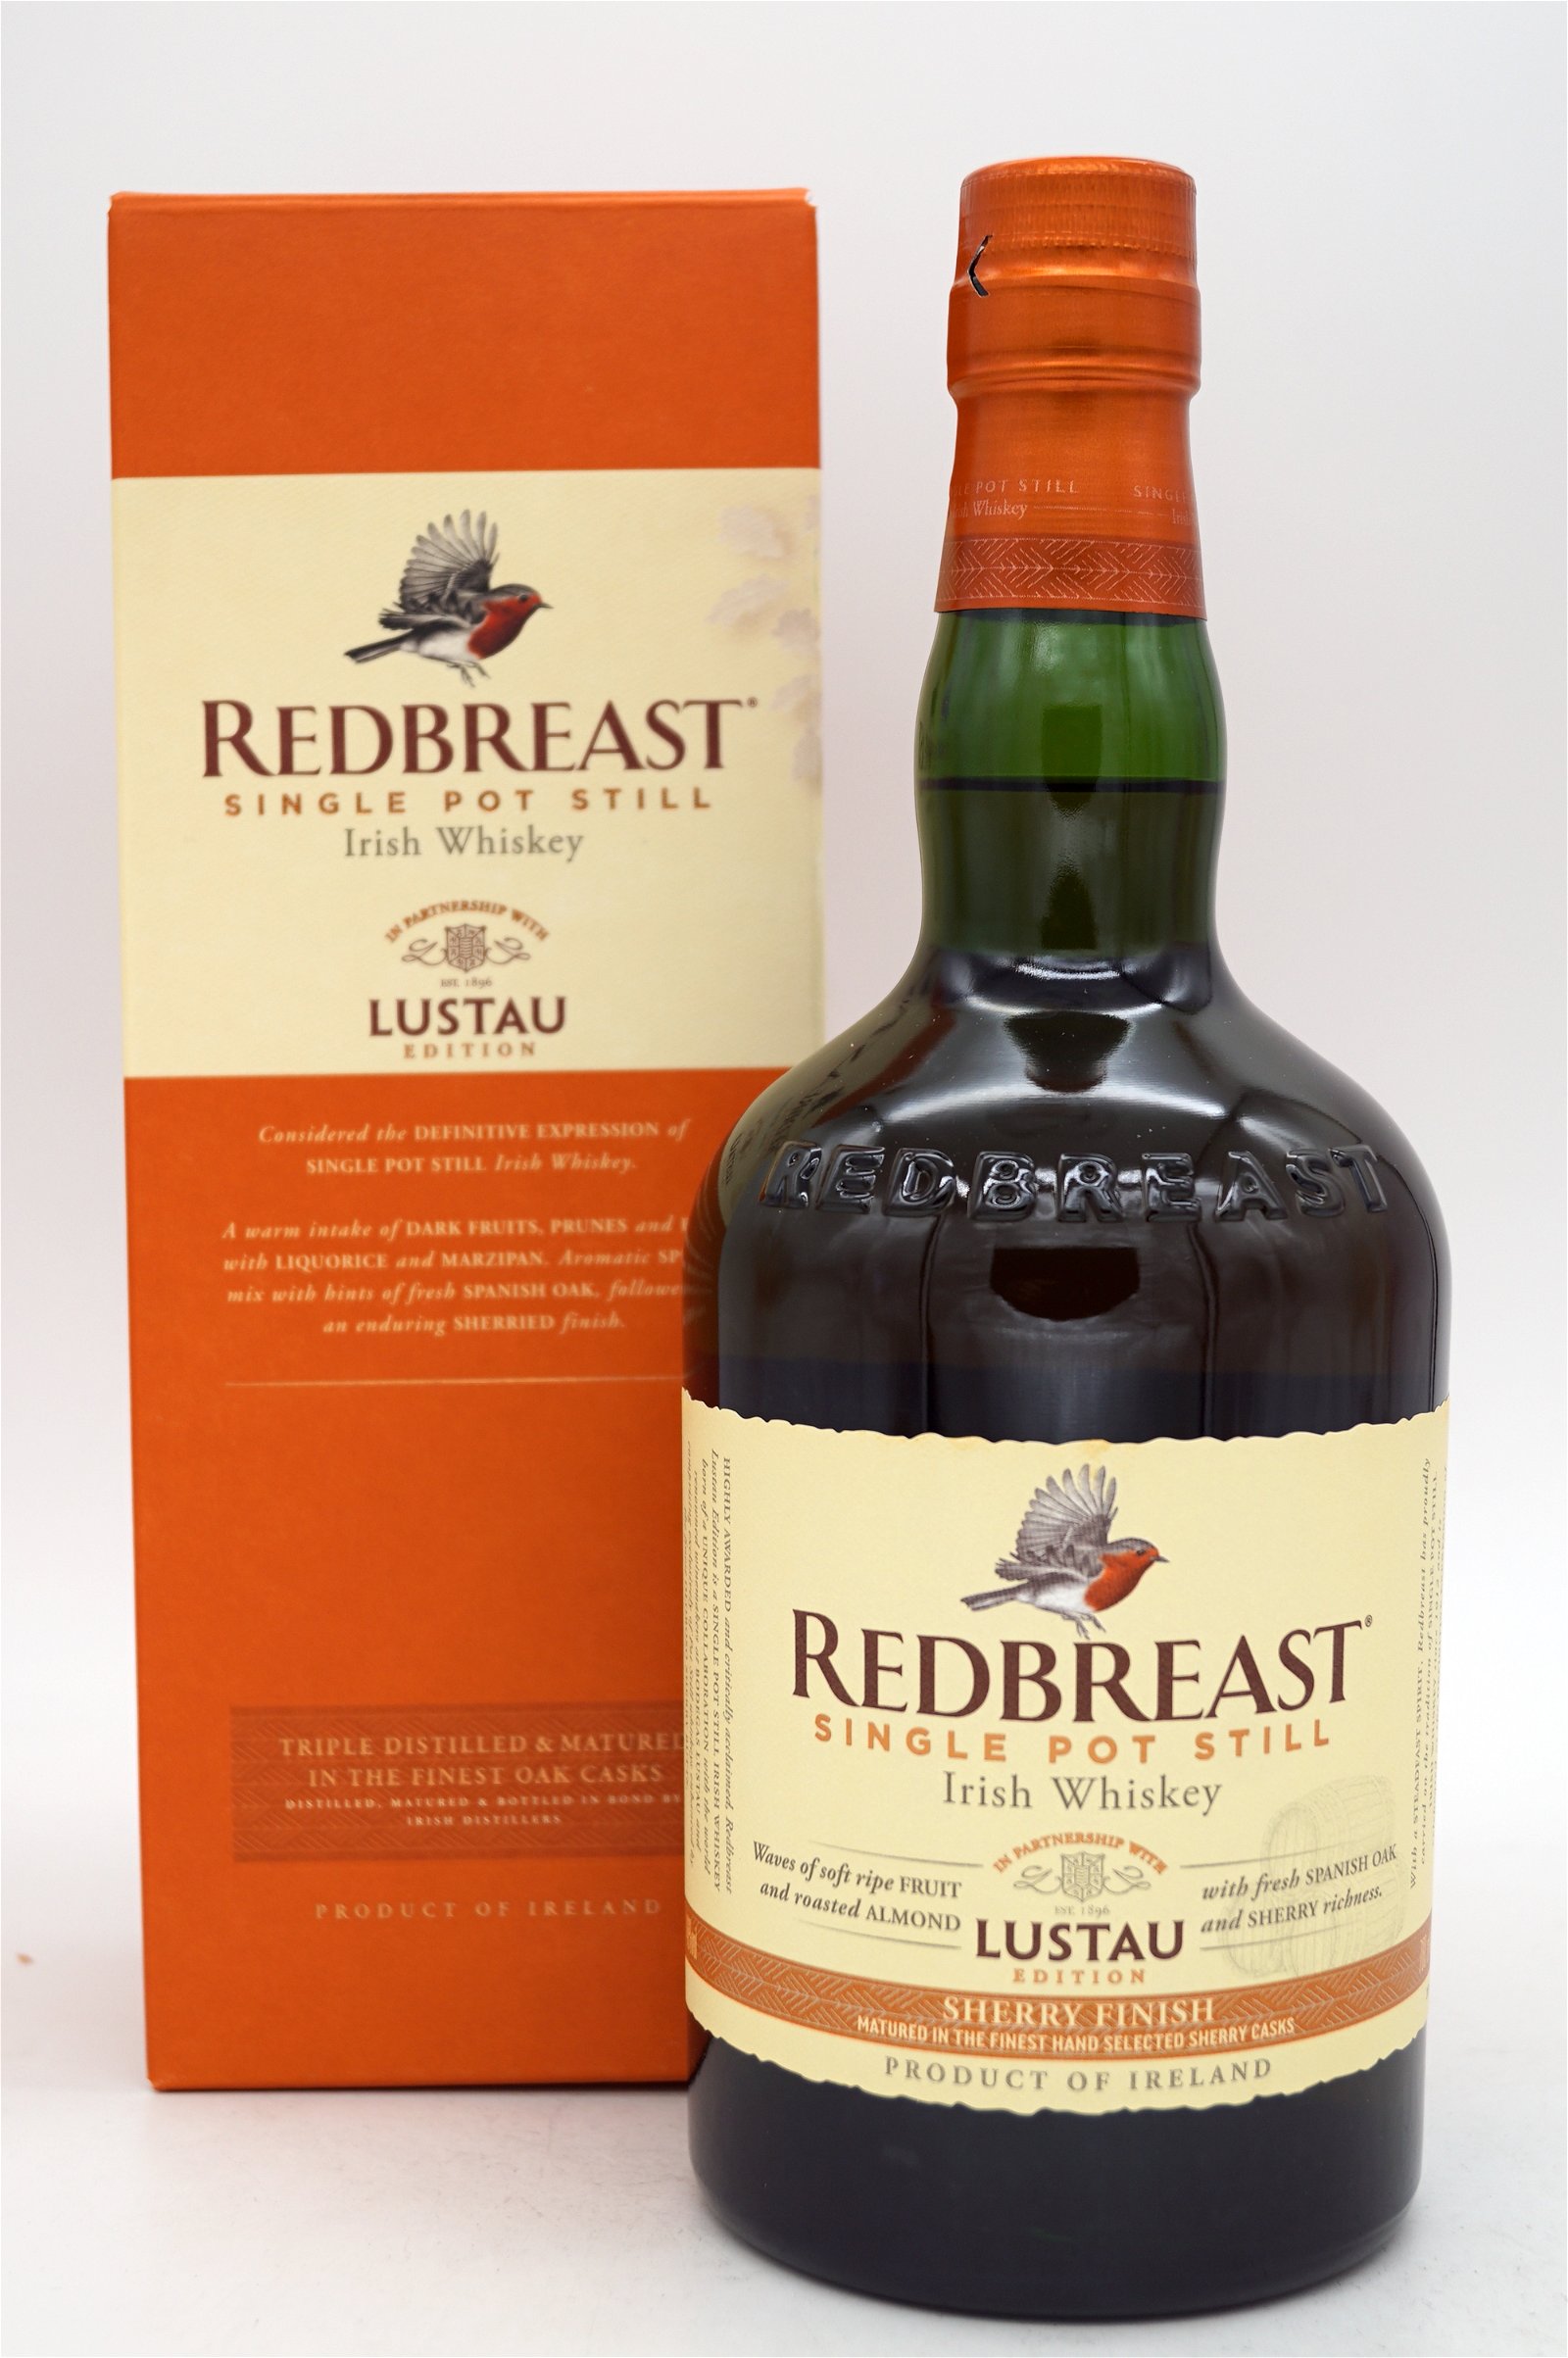 Lustau Edition Sherry Finish Irish Whisky